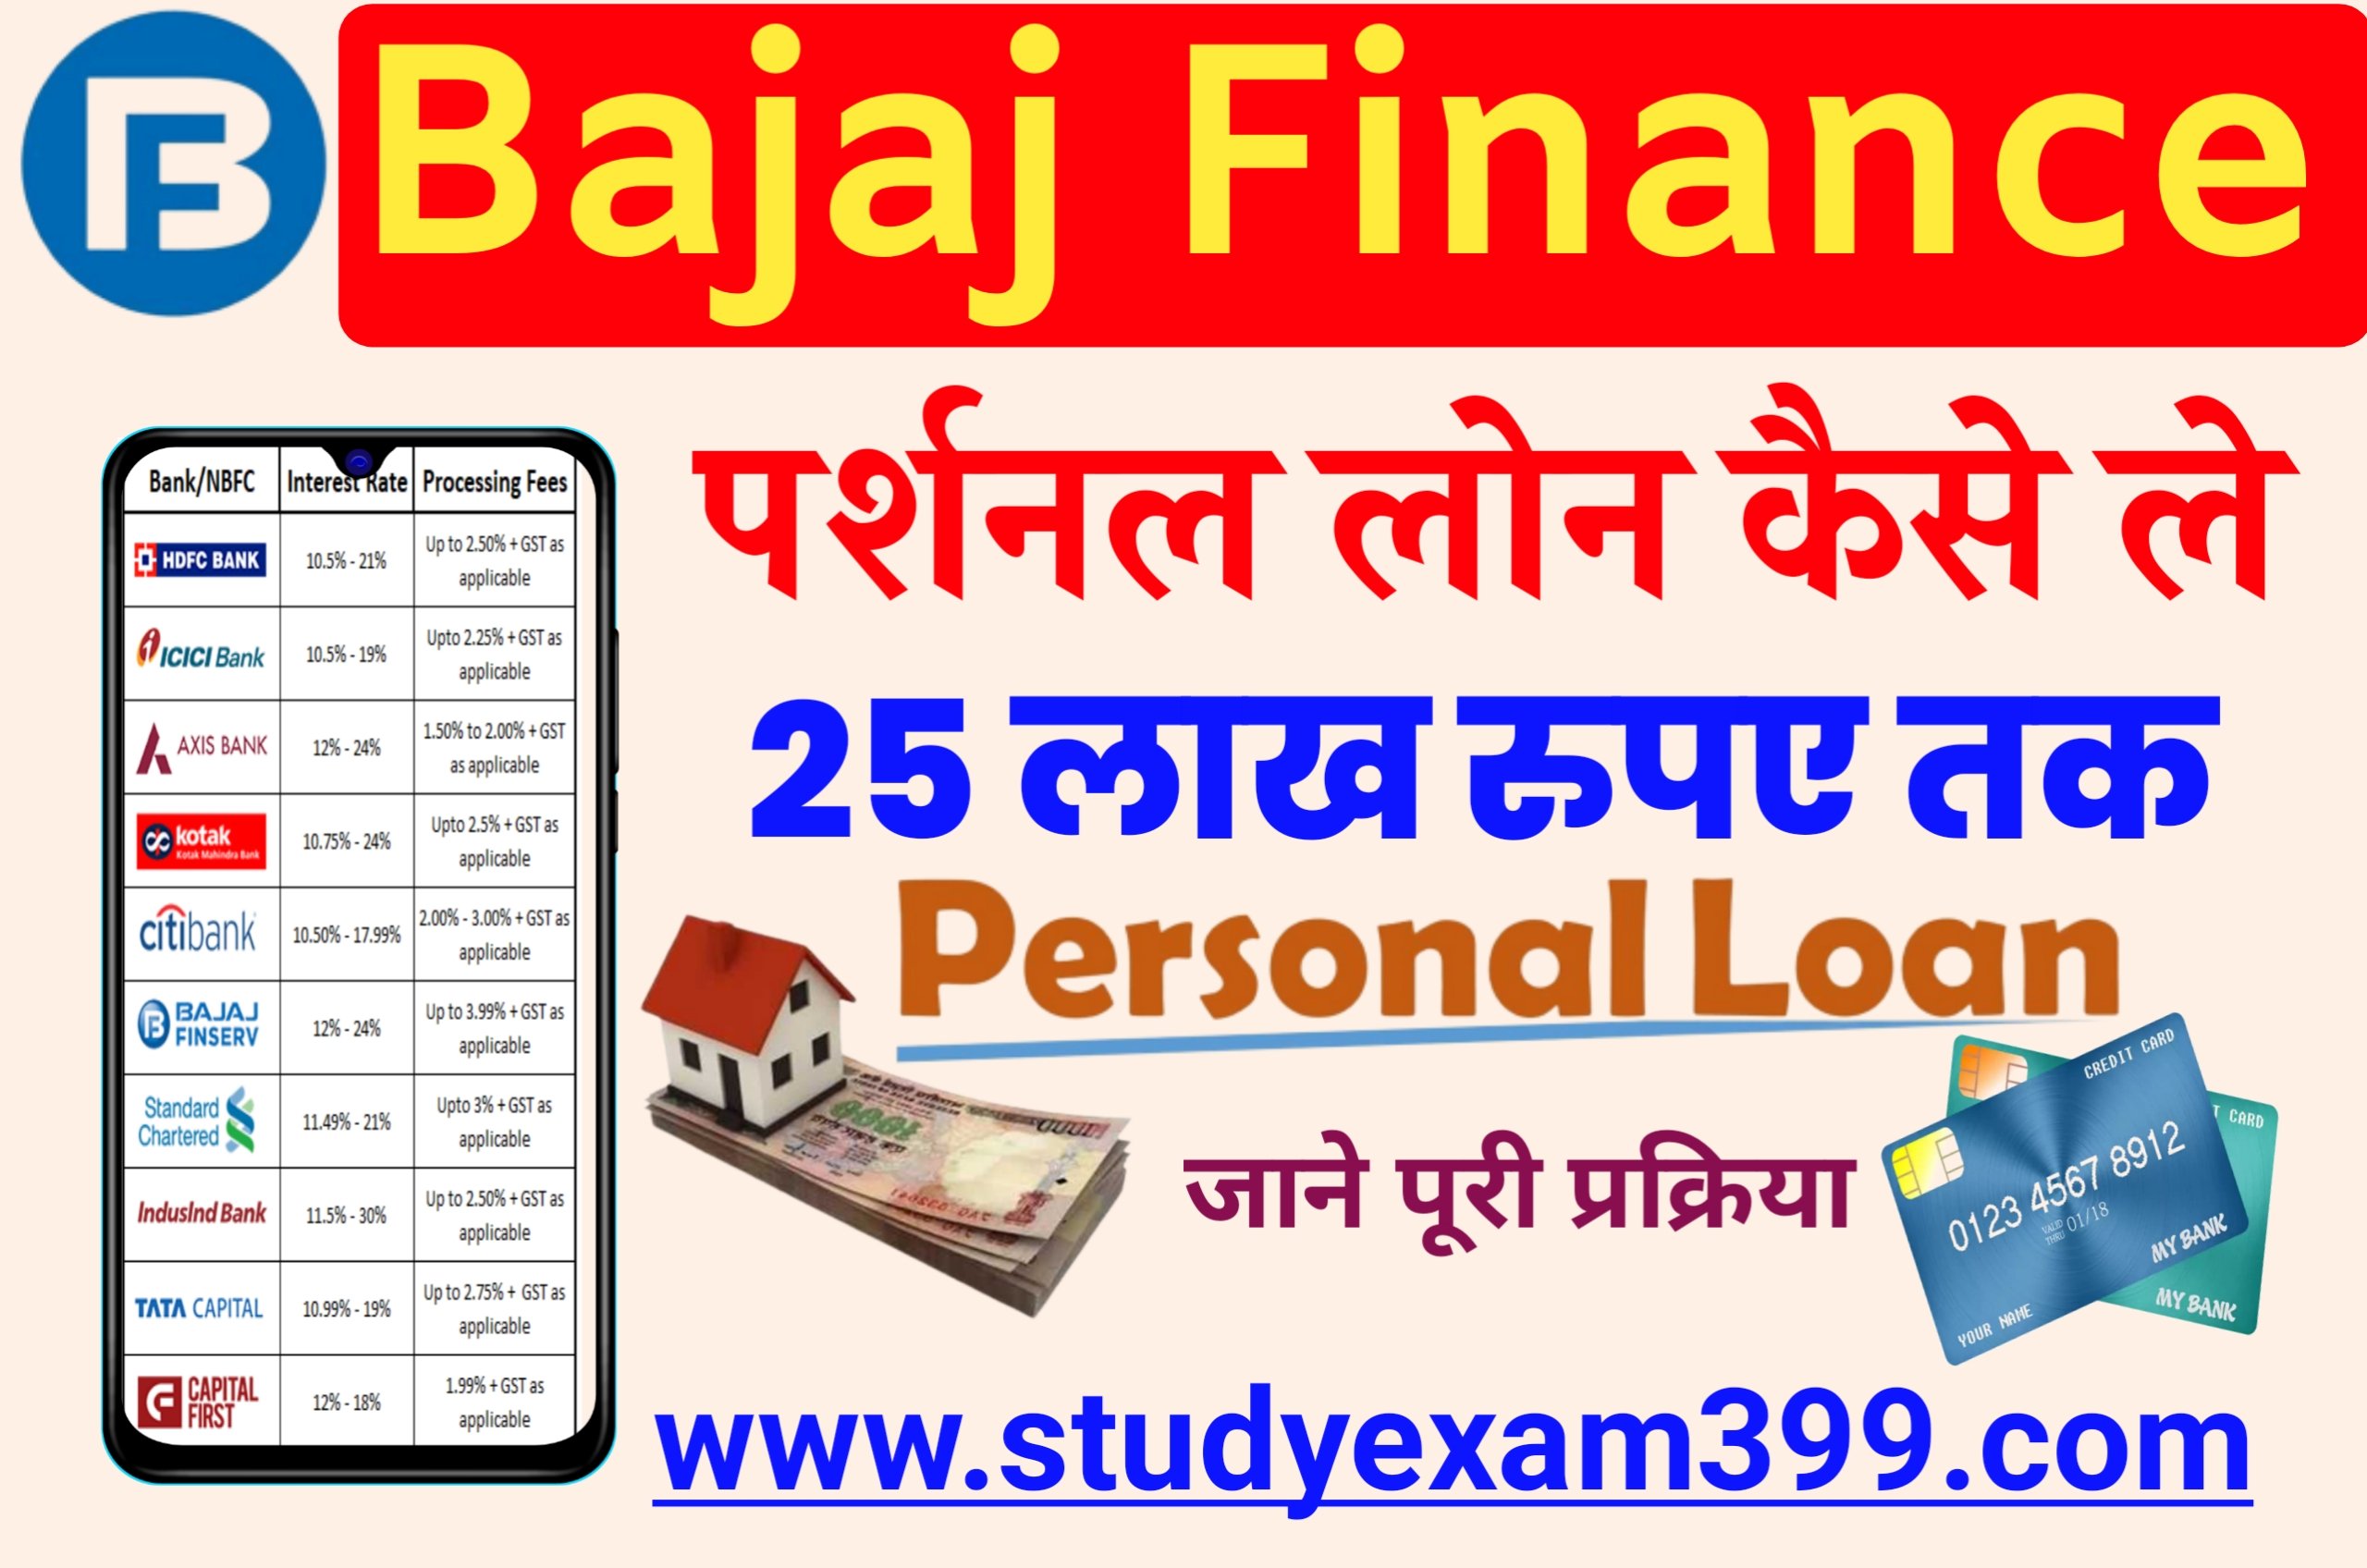 Bajaj Finance Personal Loan Kaise Le - बजाज फाइनेंस में पर्सनल लोन घर बैठे ₹50000 तक सीधे अपने बैंक खाते में कैसे लोन लें, जानिए पूरी प्रोसेस